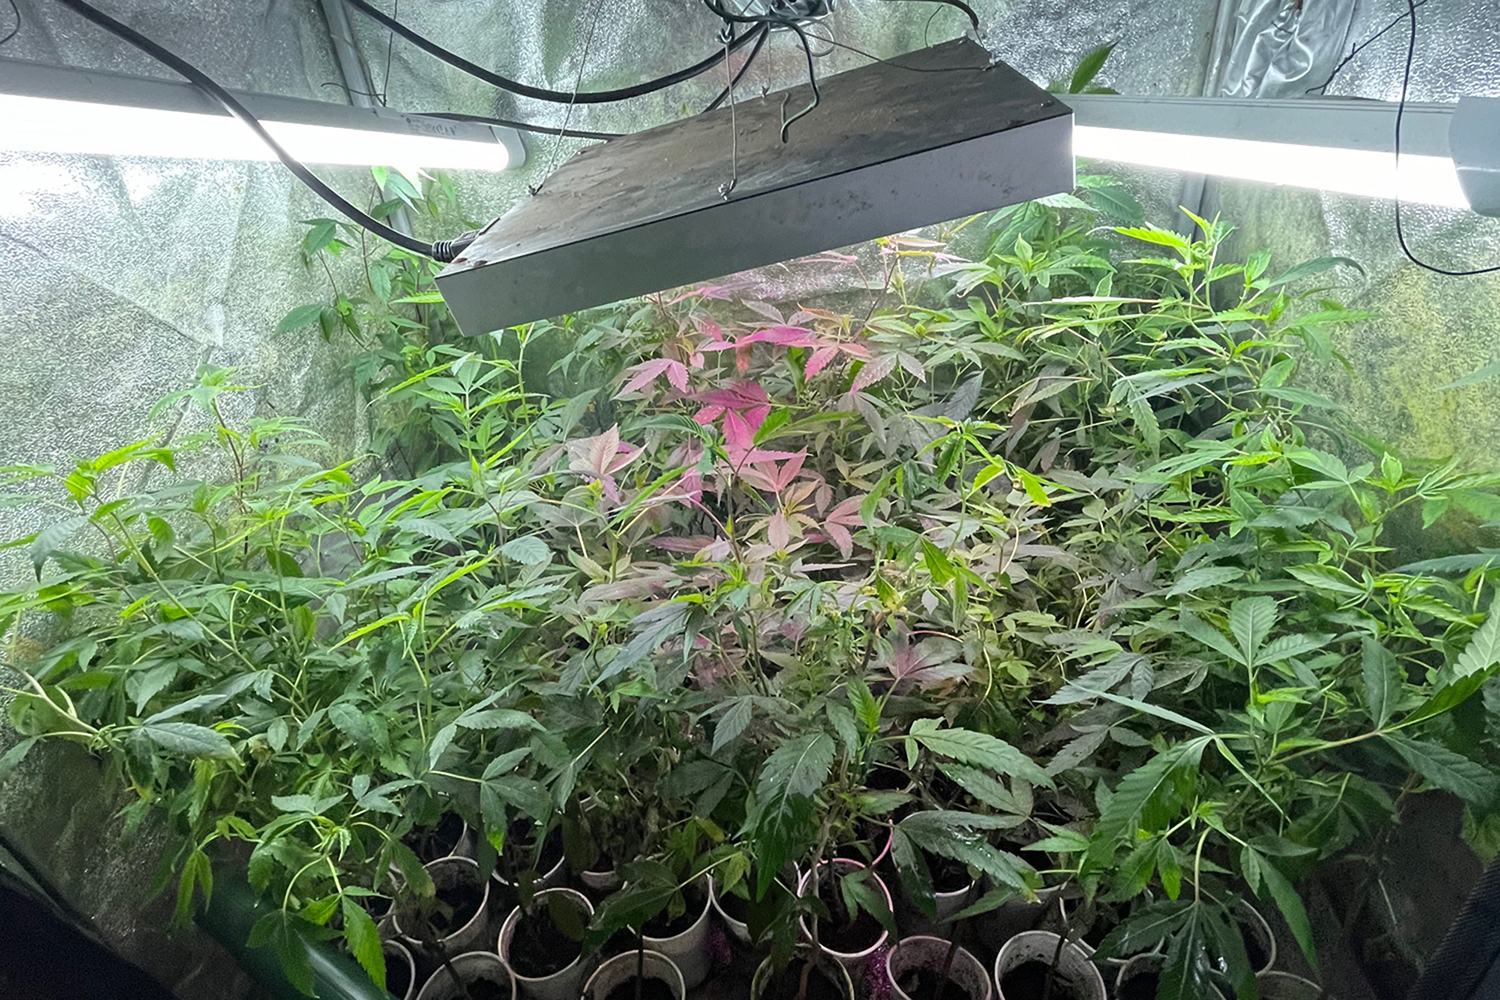 Cannabisplantage in Aachen entdeckt